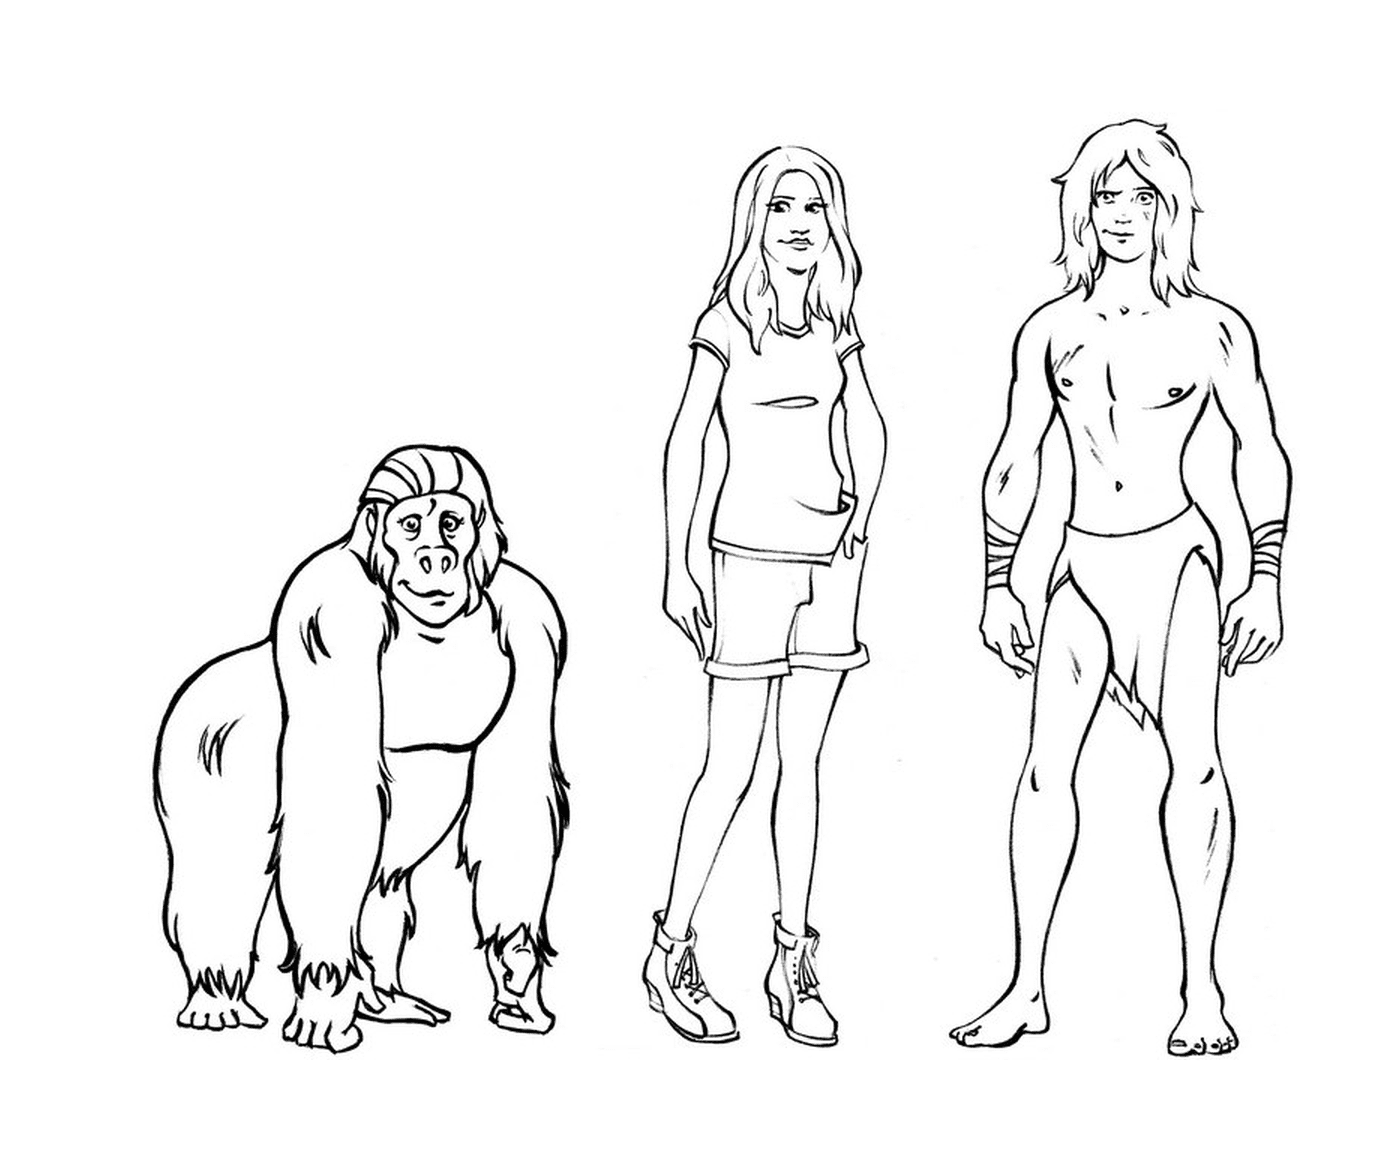  男人和女人站在大猩猩旁边 